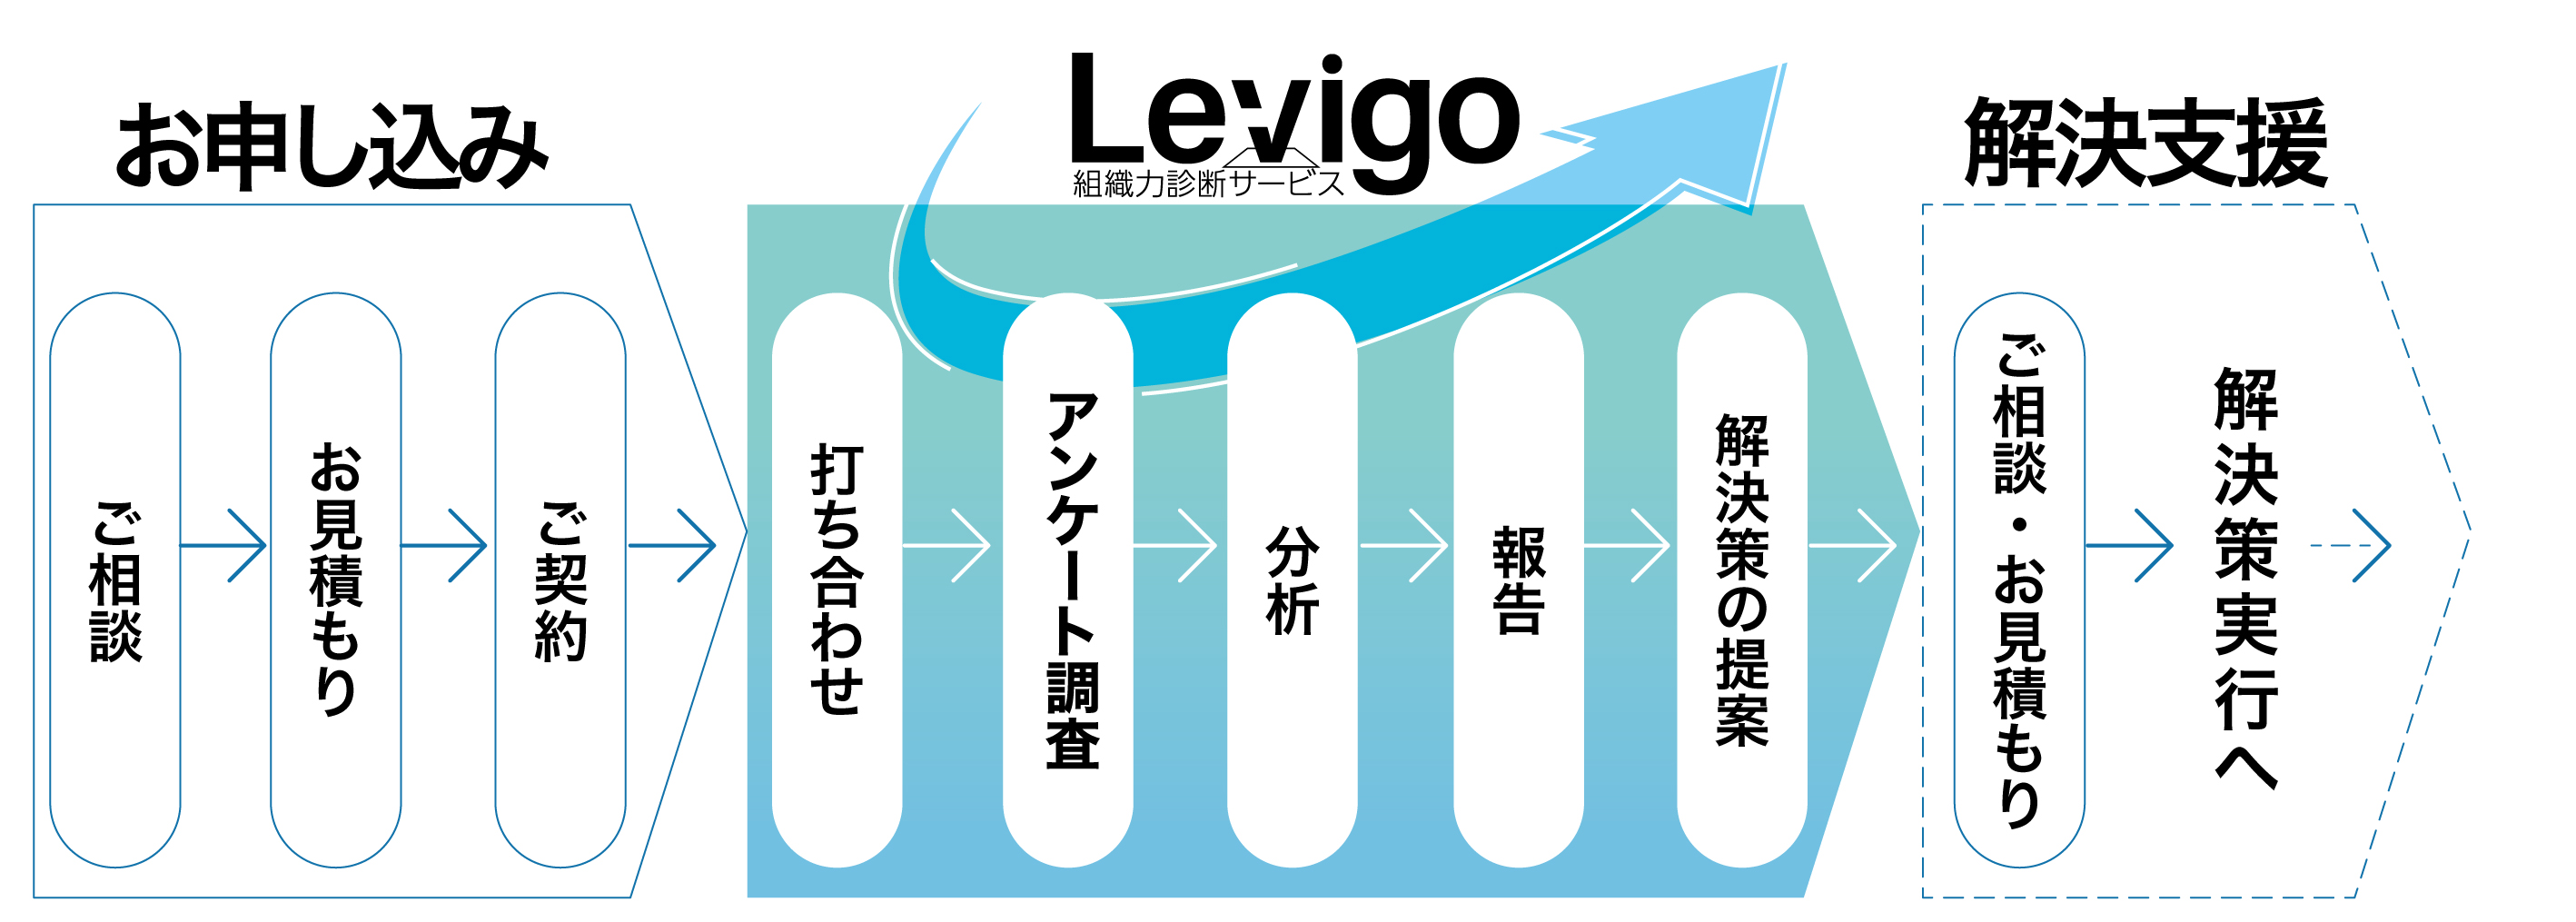 Levigo（レヴィーゴ）のご利用までの流れ：ご相談→お見積り→ご契約→打ち合わせ→アンケート調査→分析→報告→解決策の提案→ご相談・お見積り→解決策実行へ